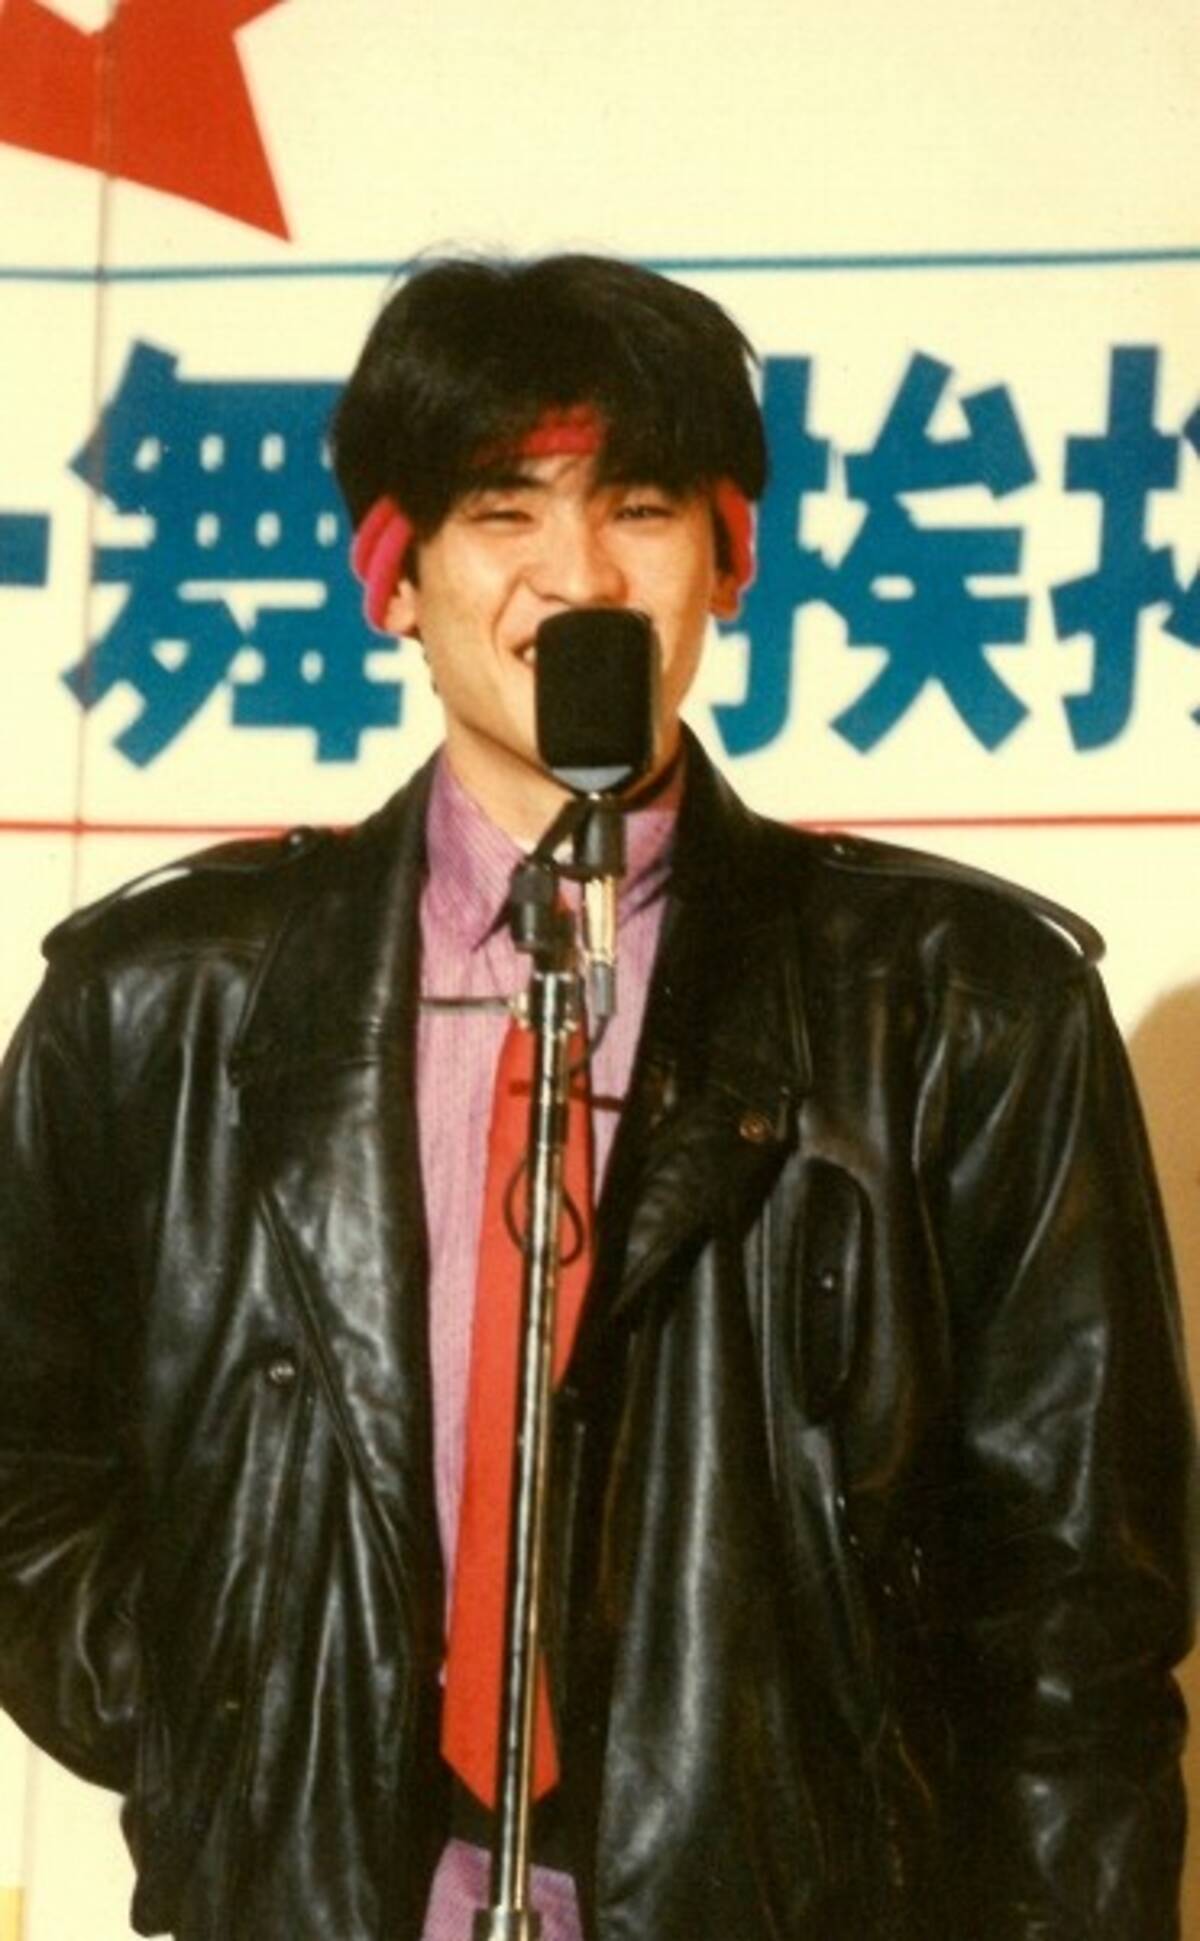 帰ってきたアイドル親衛隊 役者やってる吉川晃司も嫌いではないが やはりステージで暴れている姿が一番だ 16年11月5日 エキサイトニュース